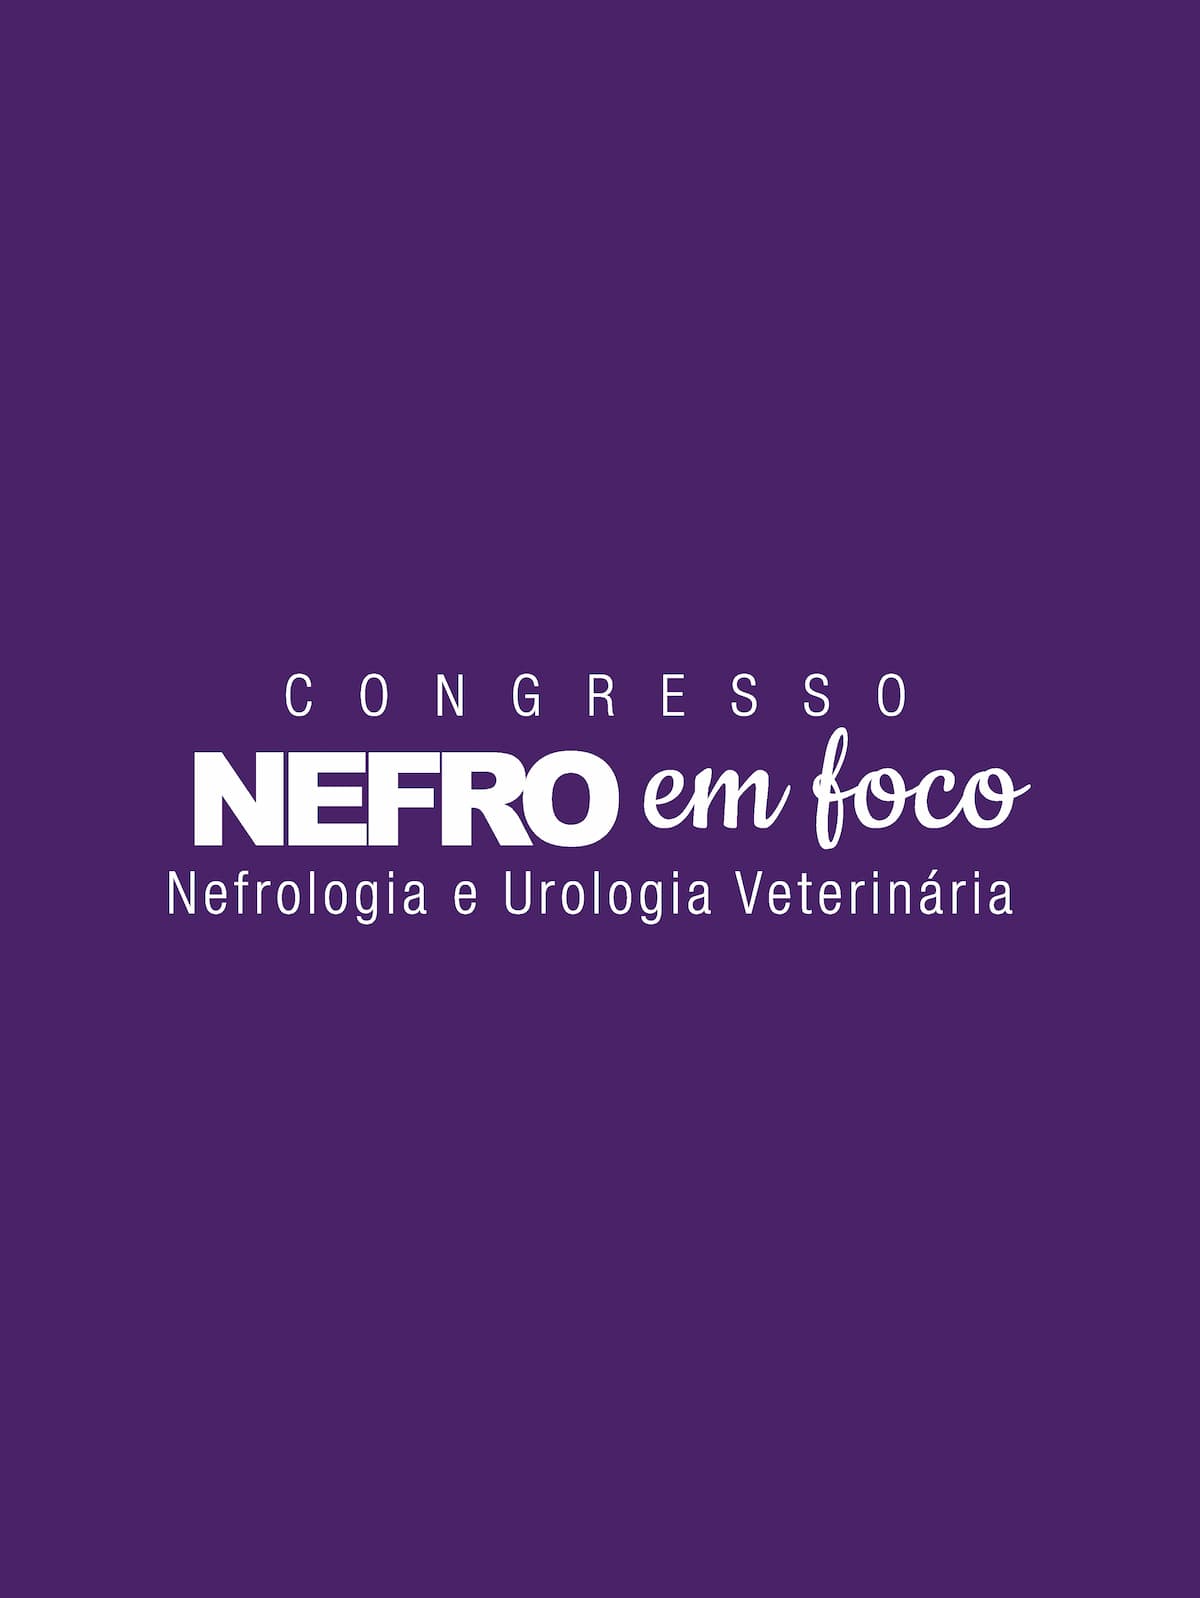 Congresso Nefro em Foco Veterinários dia 23/04/24